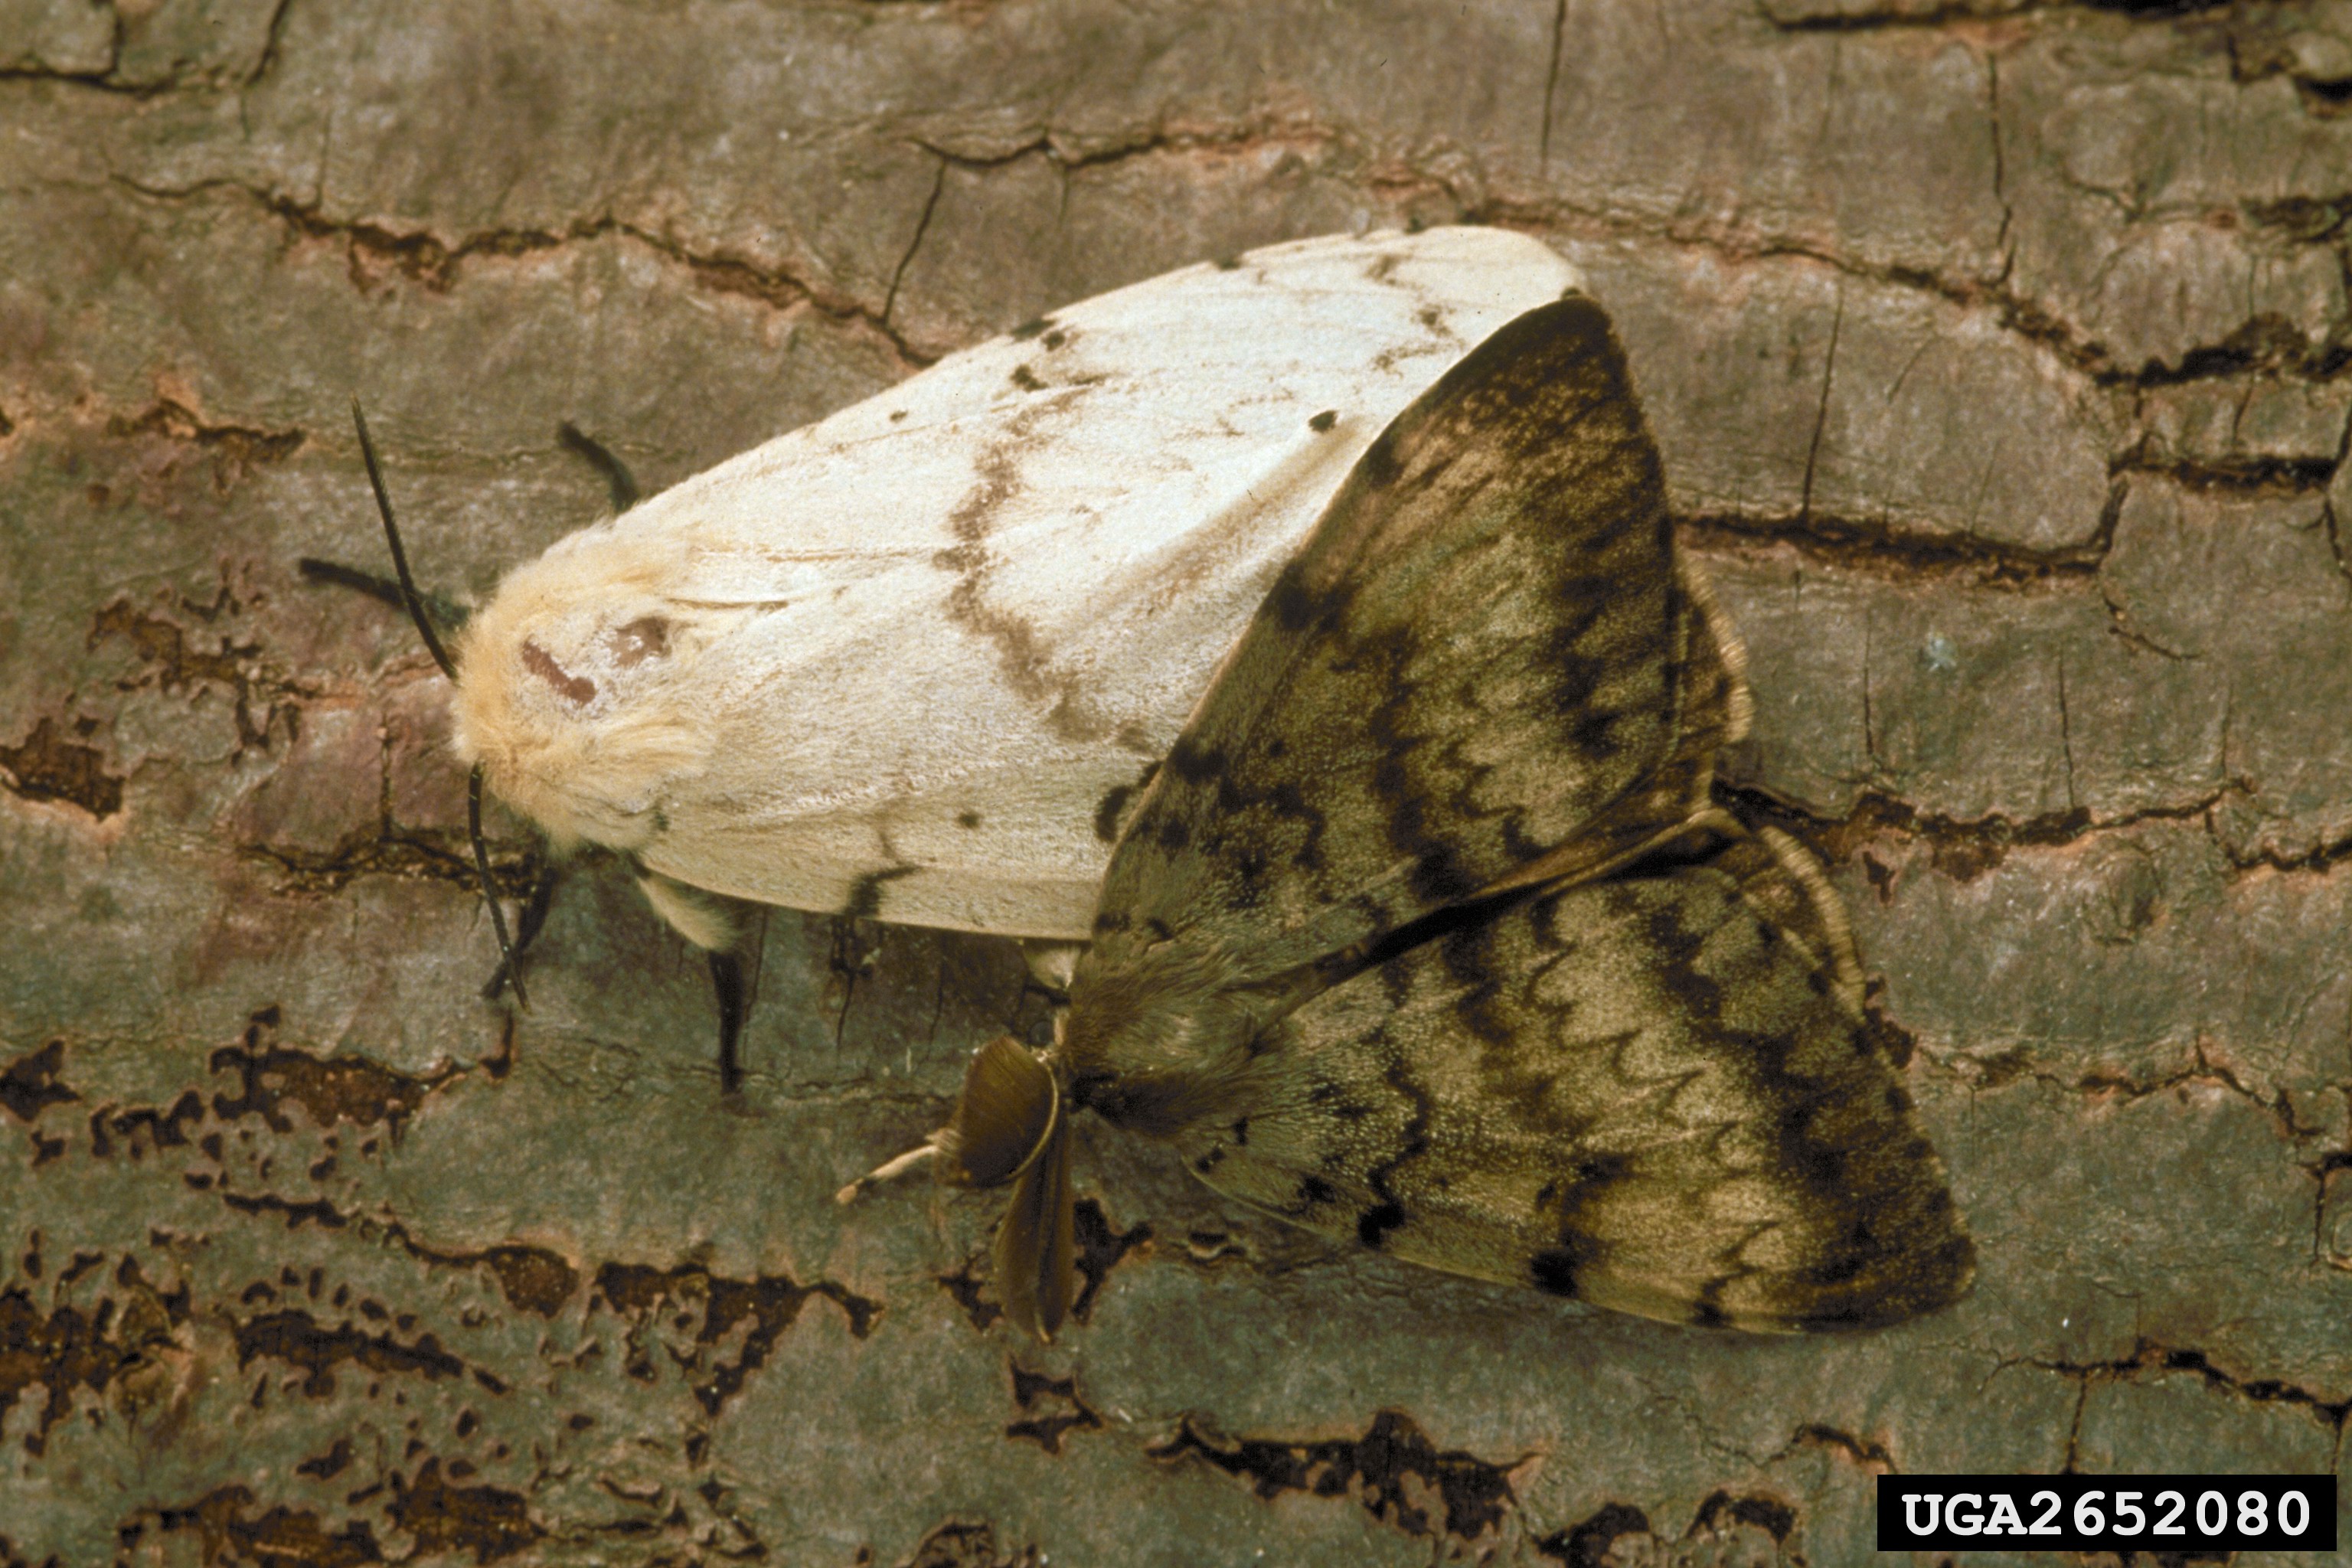 Male and female gypsy moths